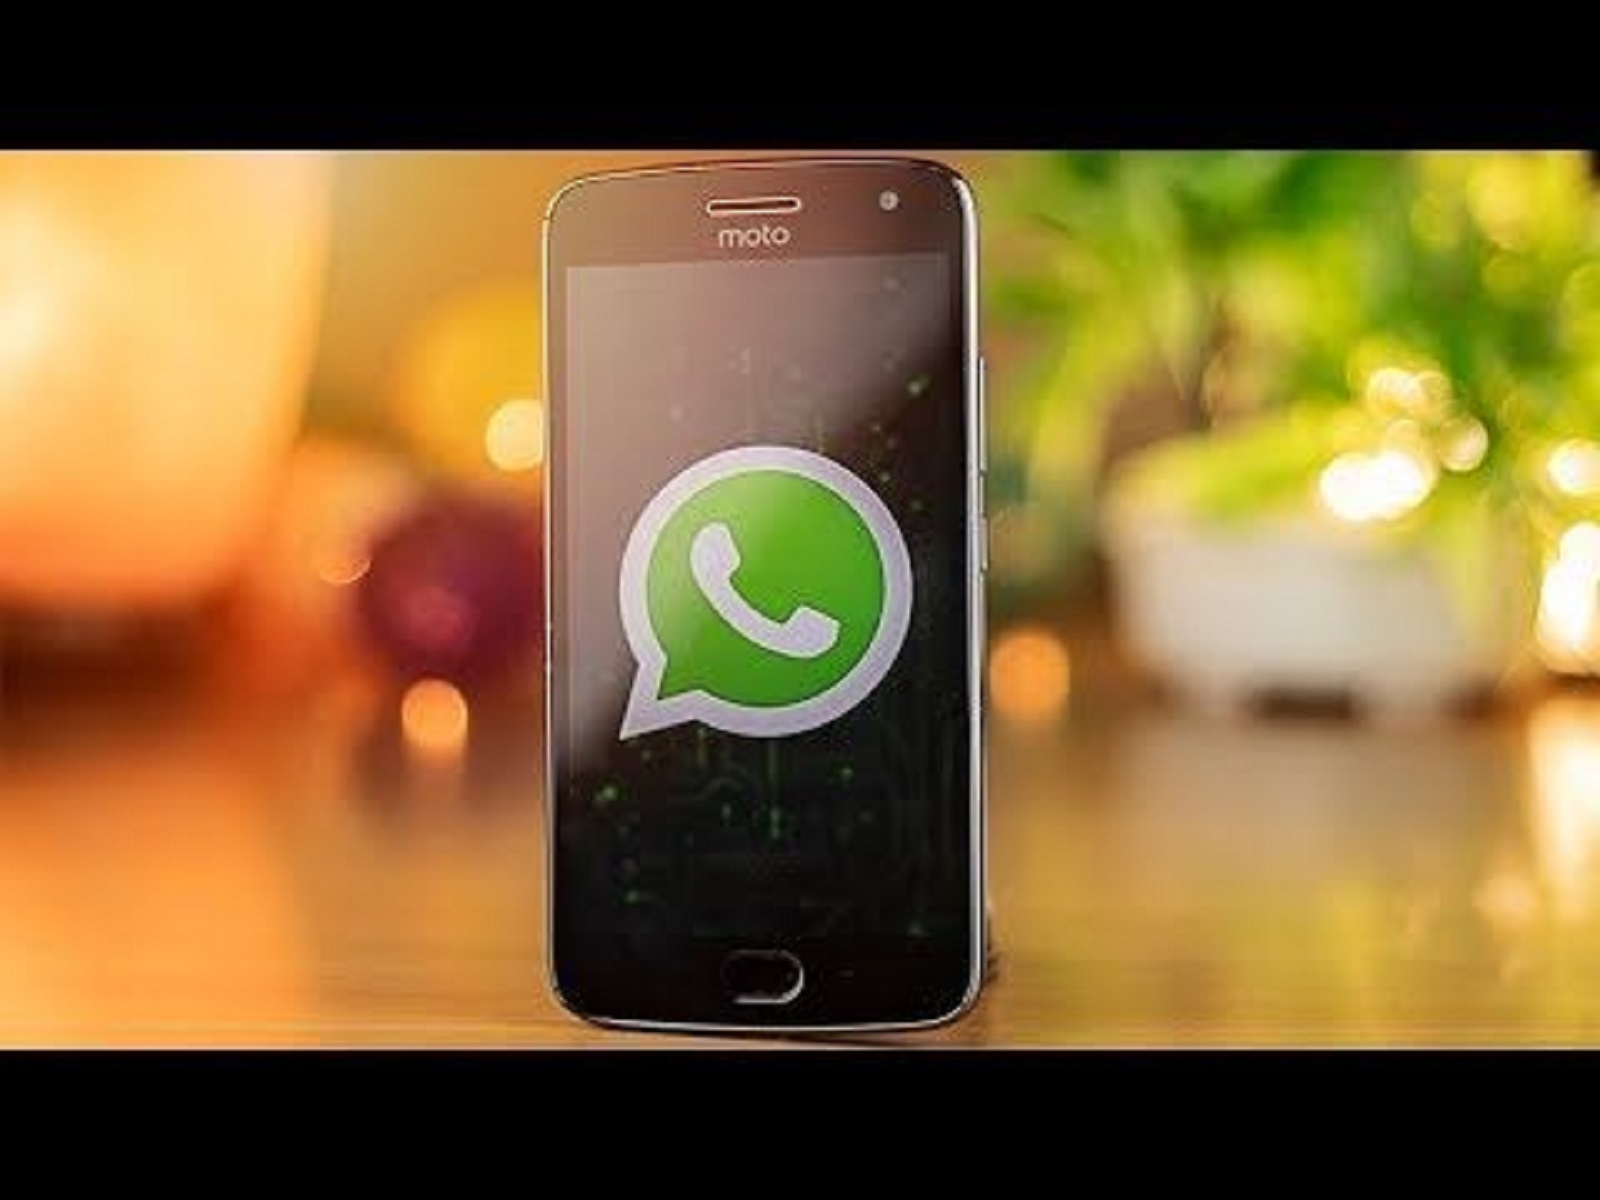  Link GB WhatsApp Clone Terbaru Anti Ban, Bisa Multi Akun WA dan Kirim File Besar 